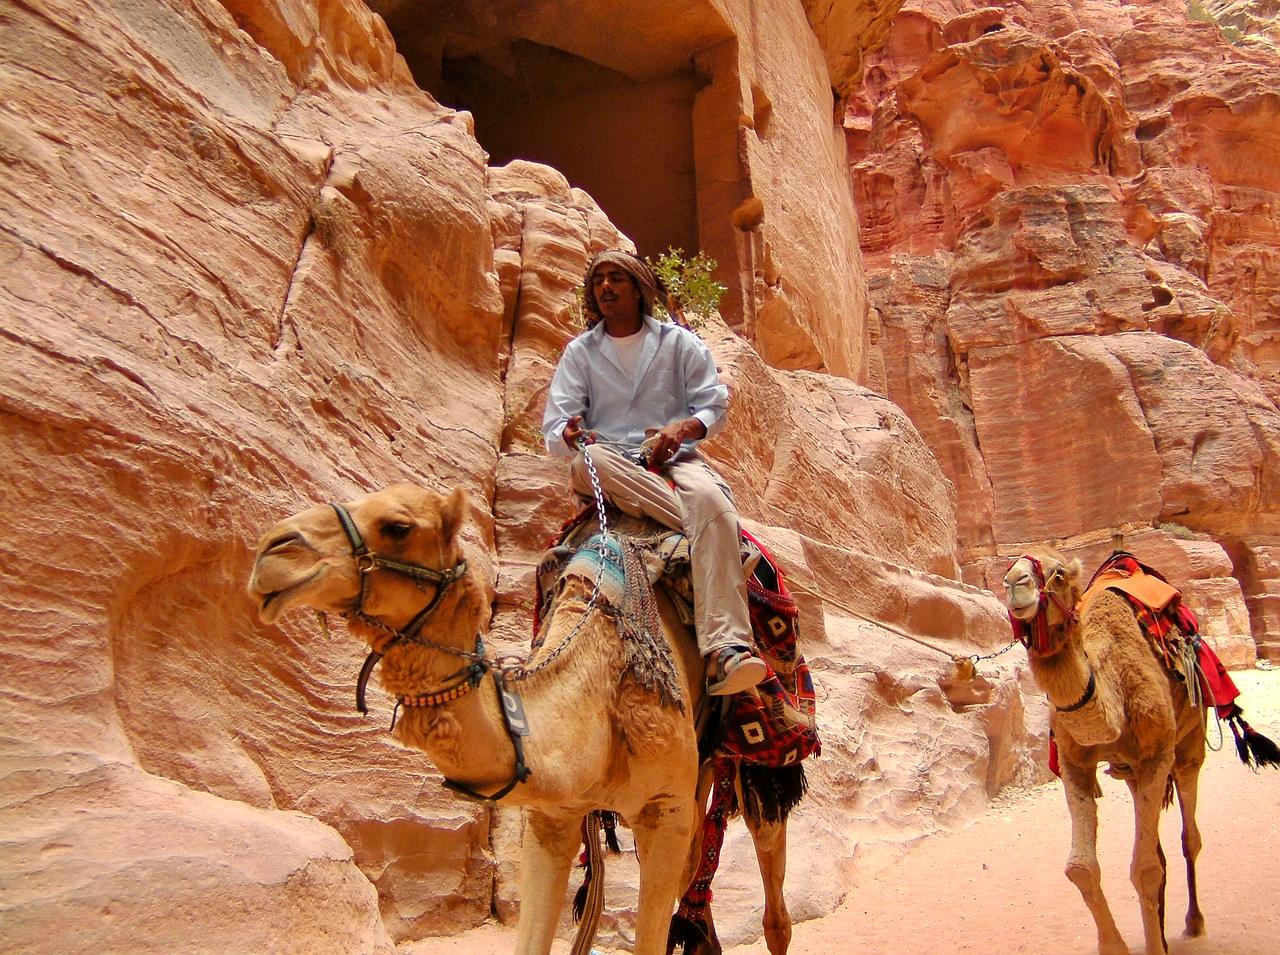 Petra, Jordan - Set-Jetting destination